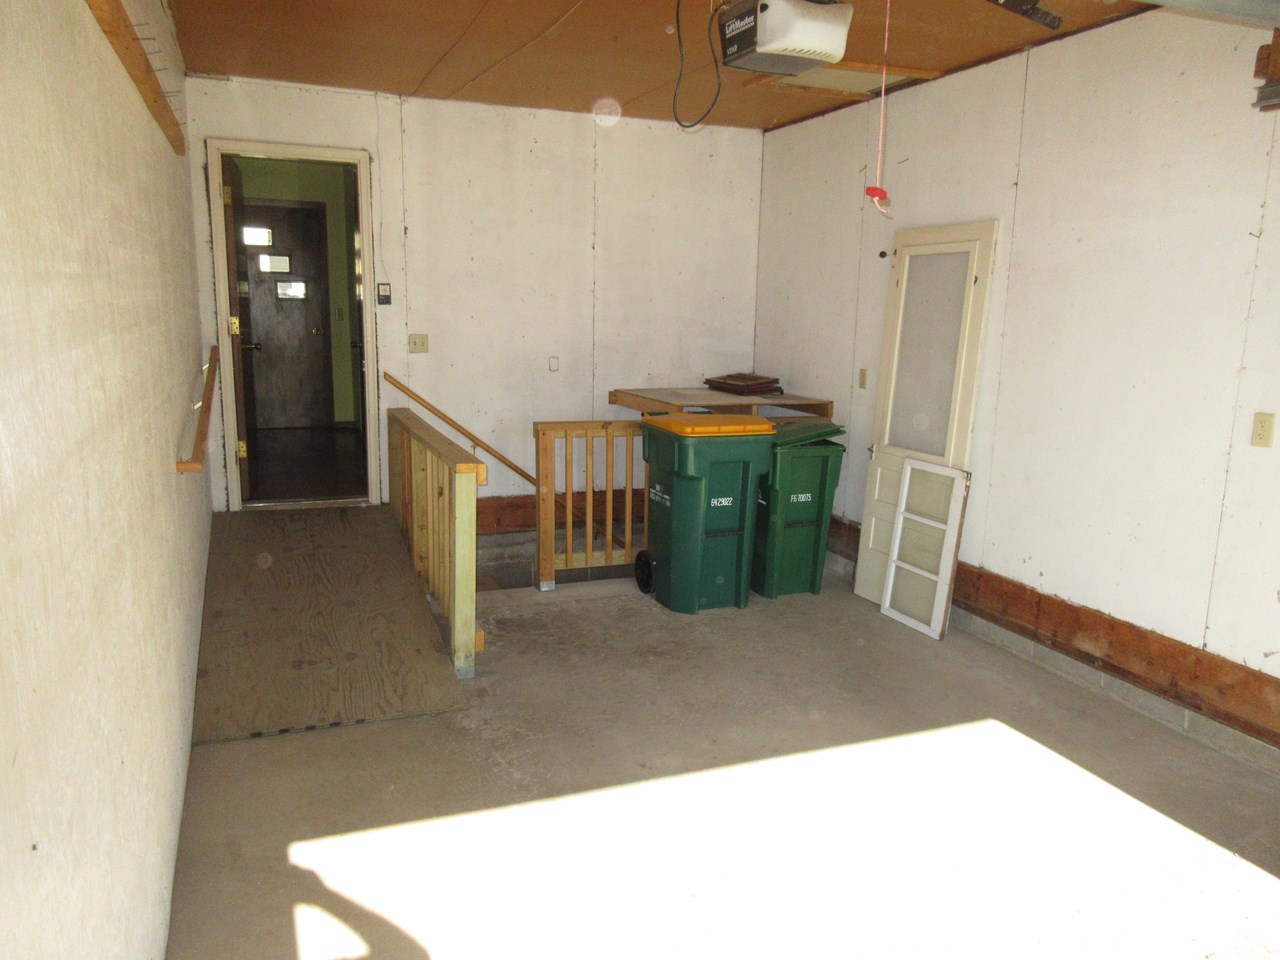 attached garage basement access